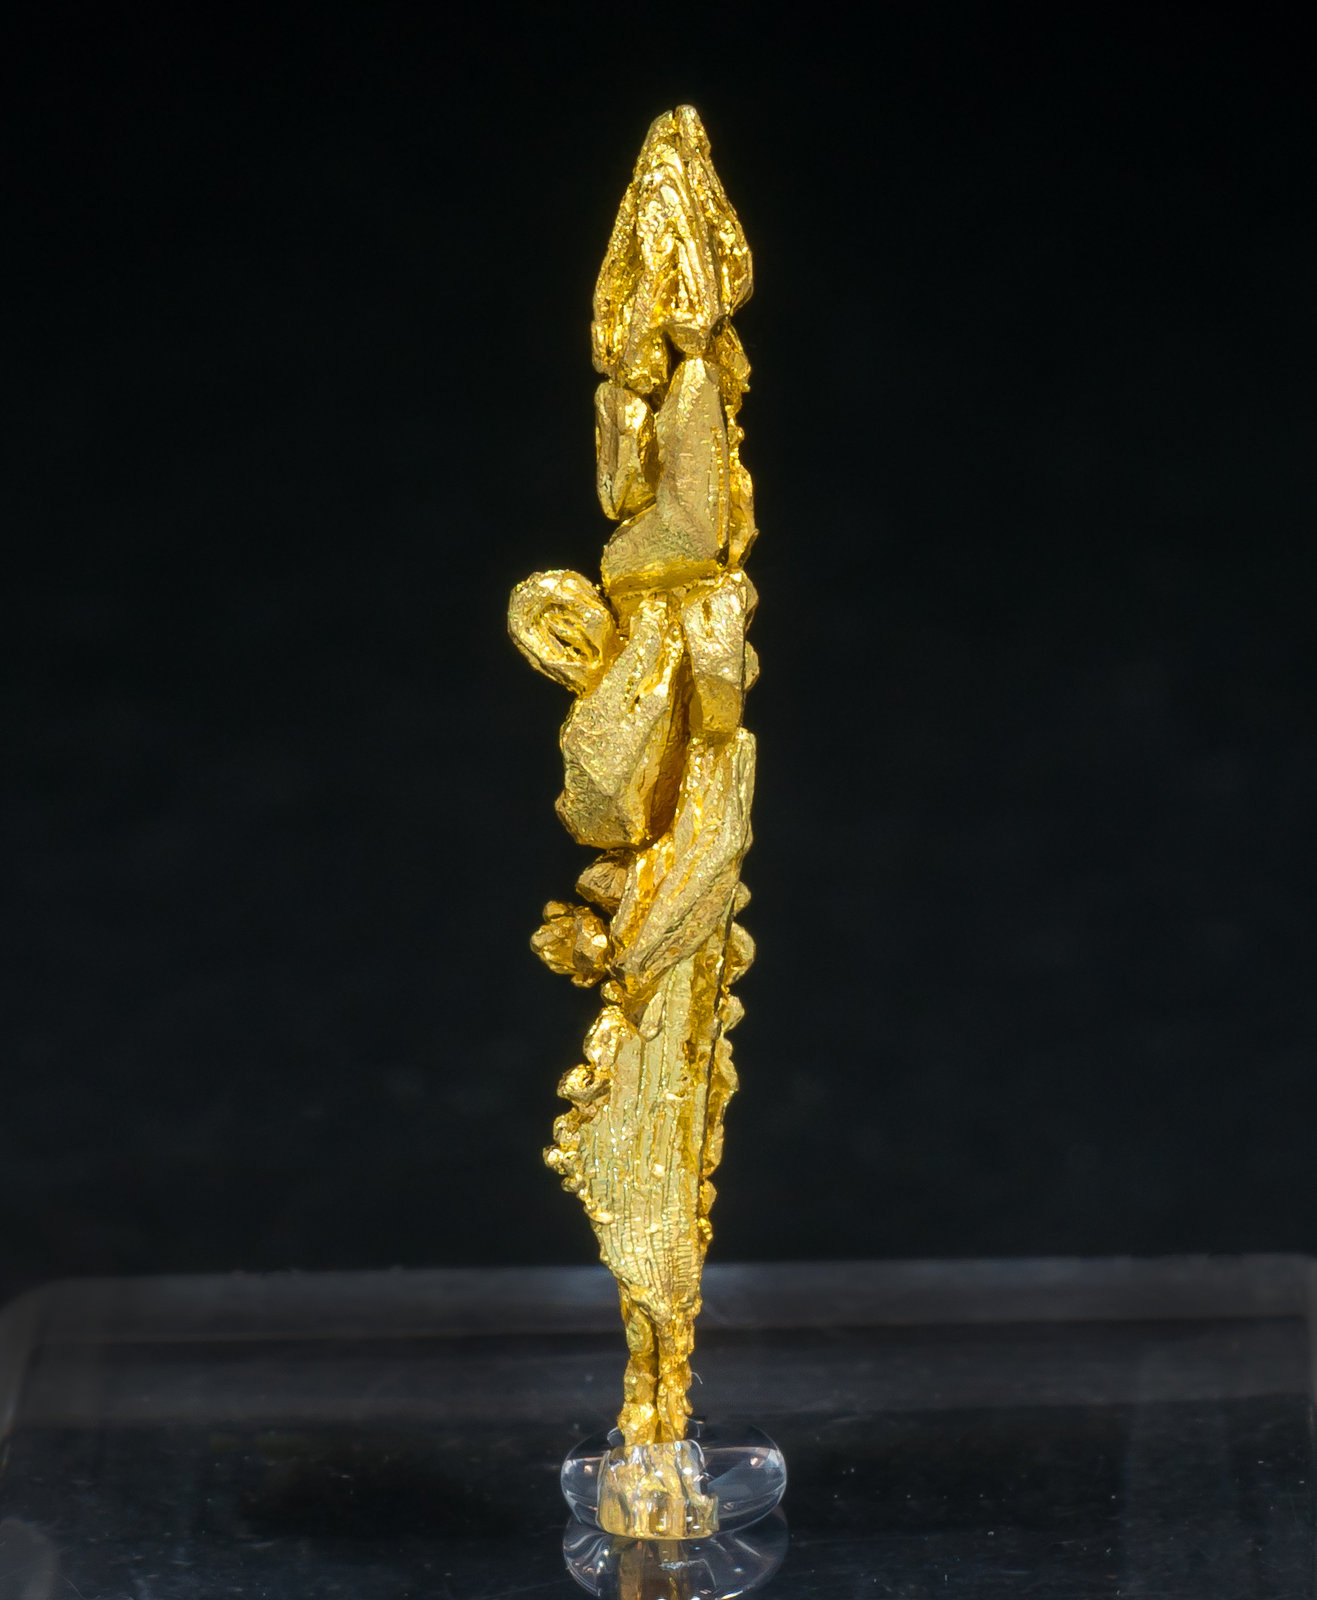 specimens/s_imagesAM4/Gold-MA26AM4f.jpg